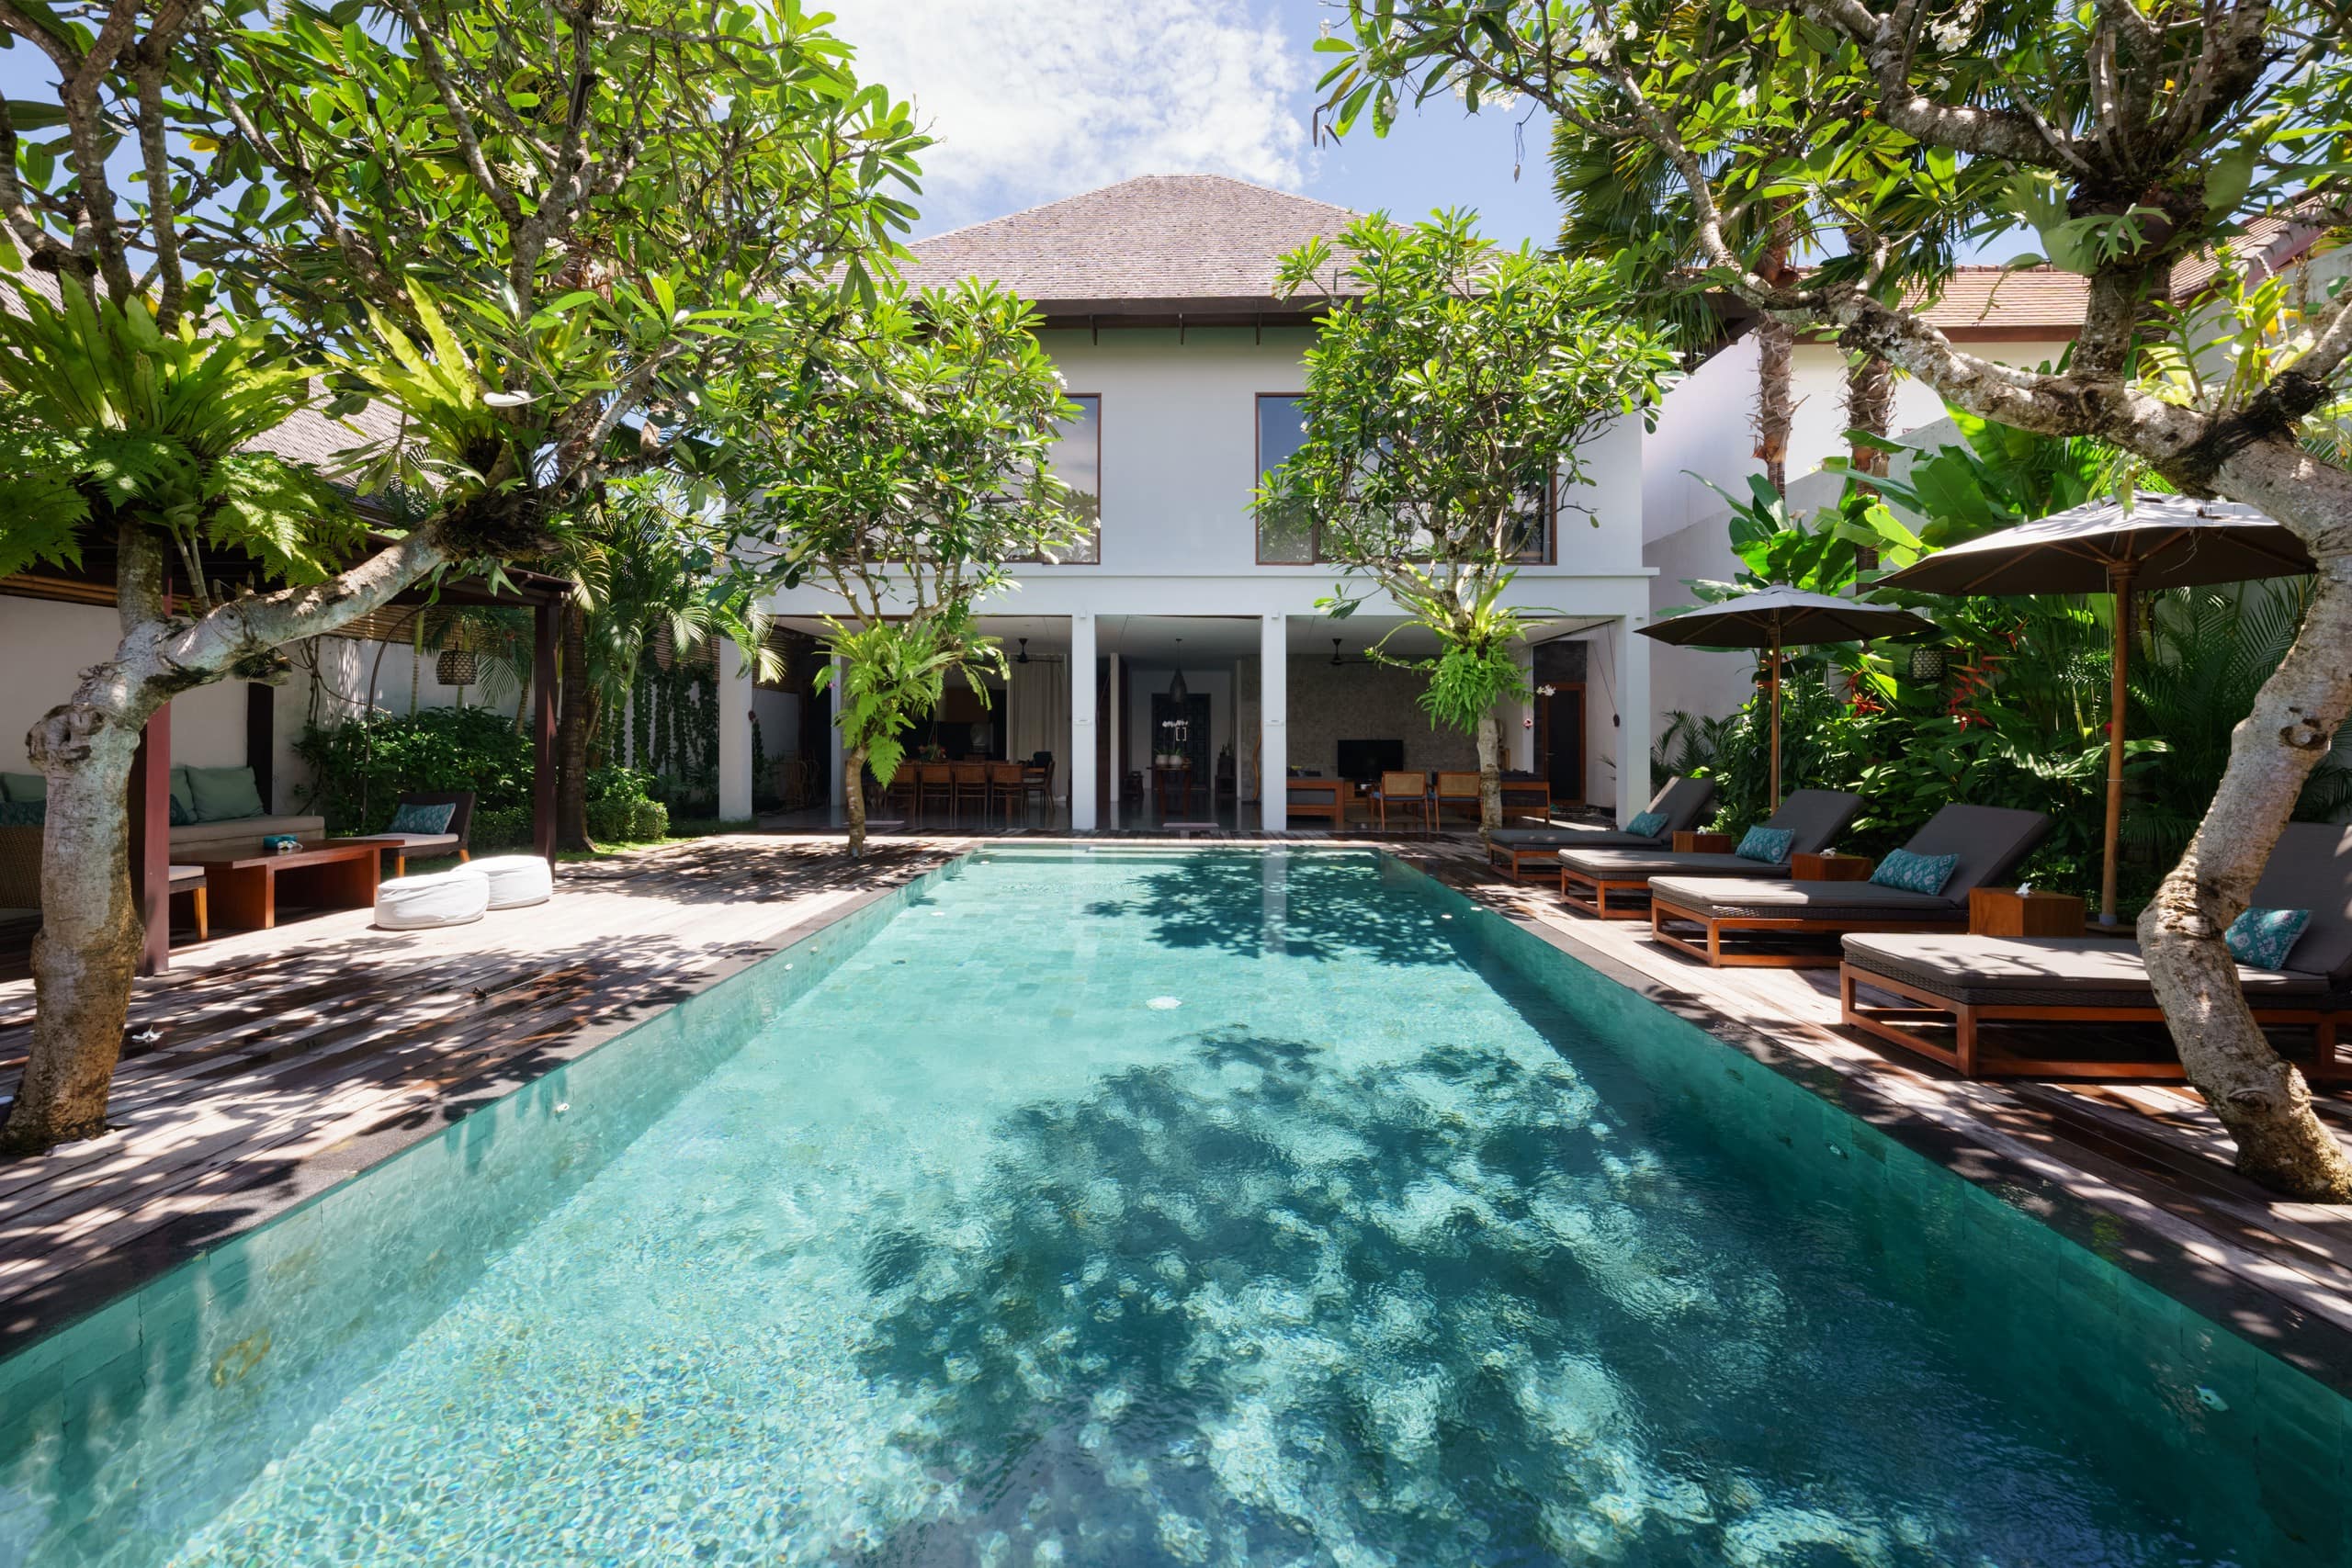  Villa  Ziba Seminyak  Bali  Houses for Rent in Seminyak  